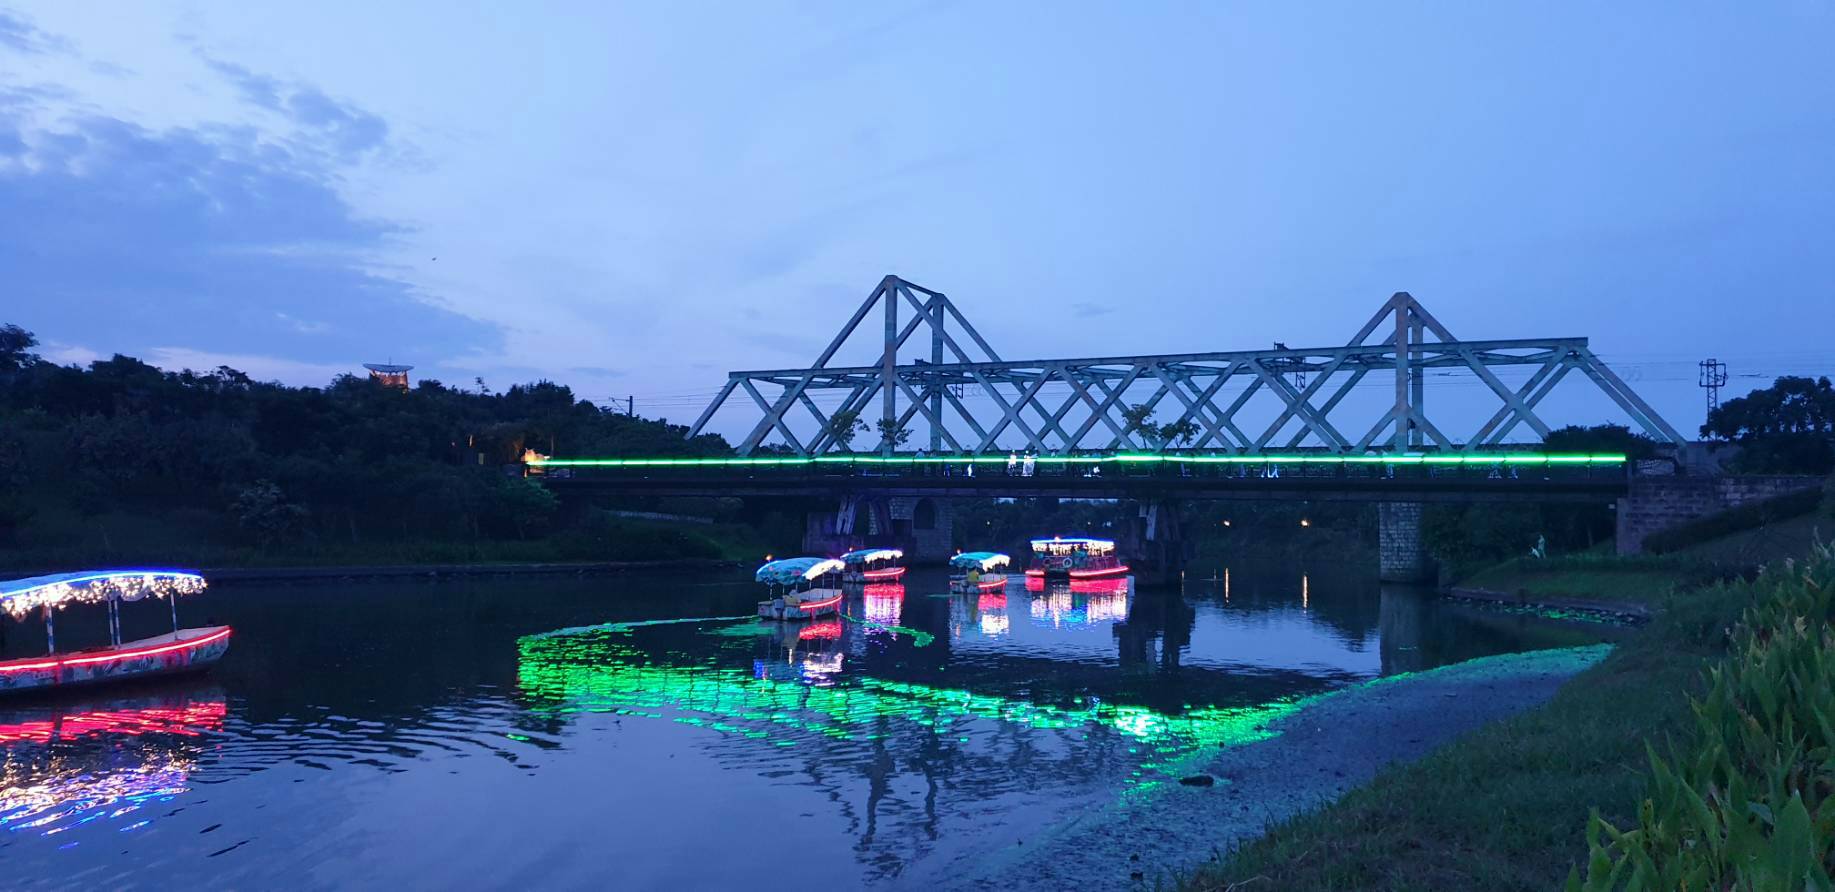 秦淮河畔再現生態綠洲 啟動夜間探索遊船夜航